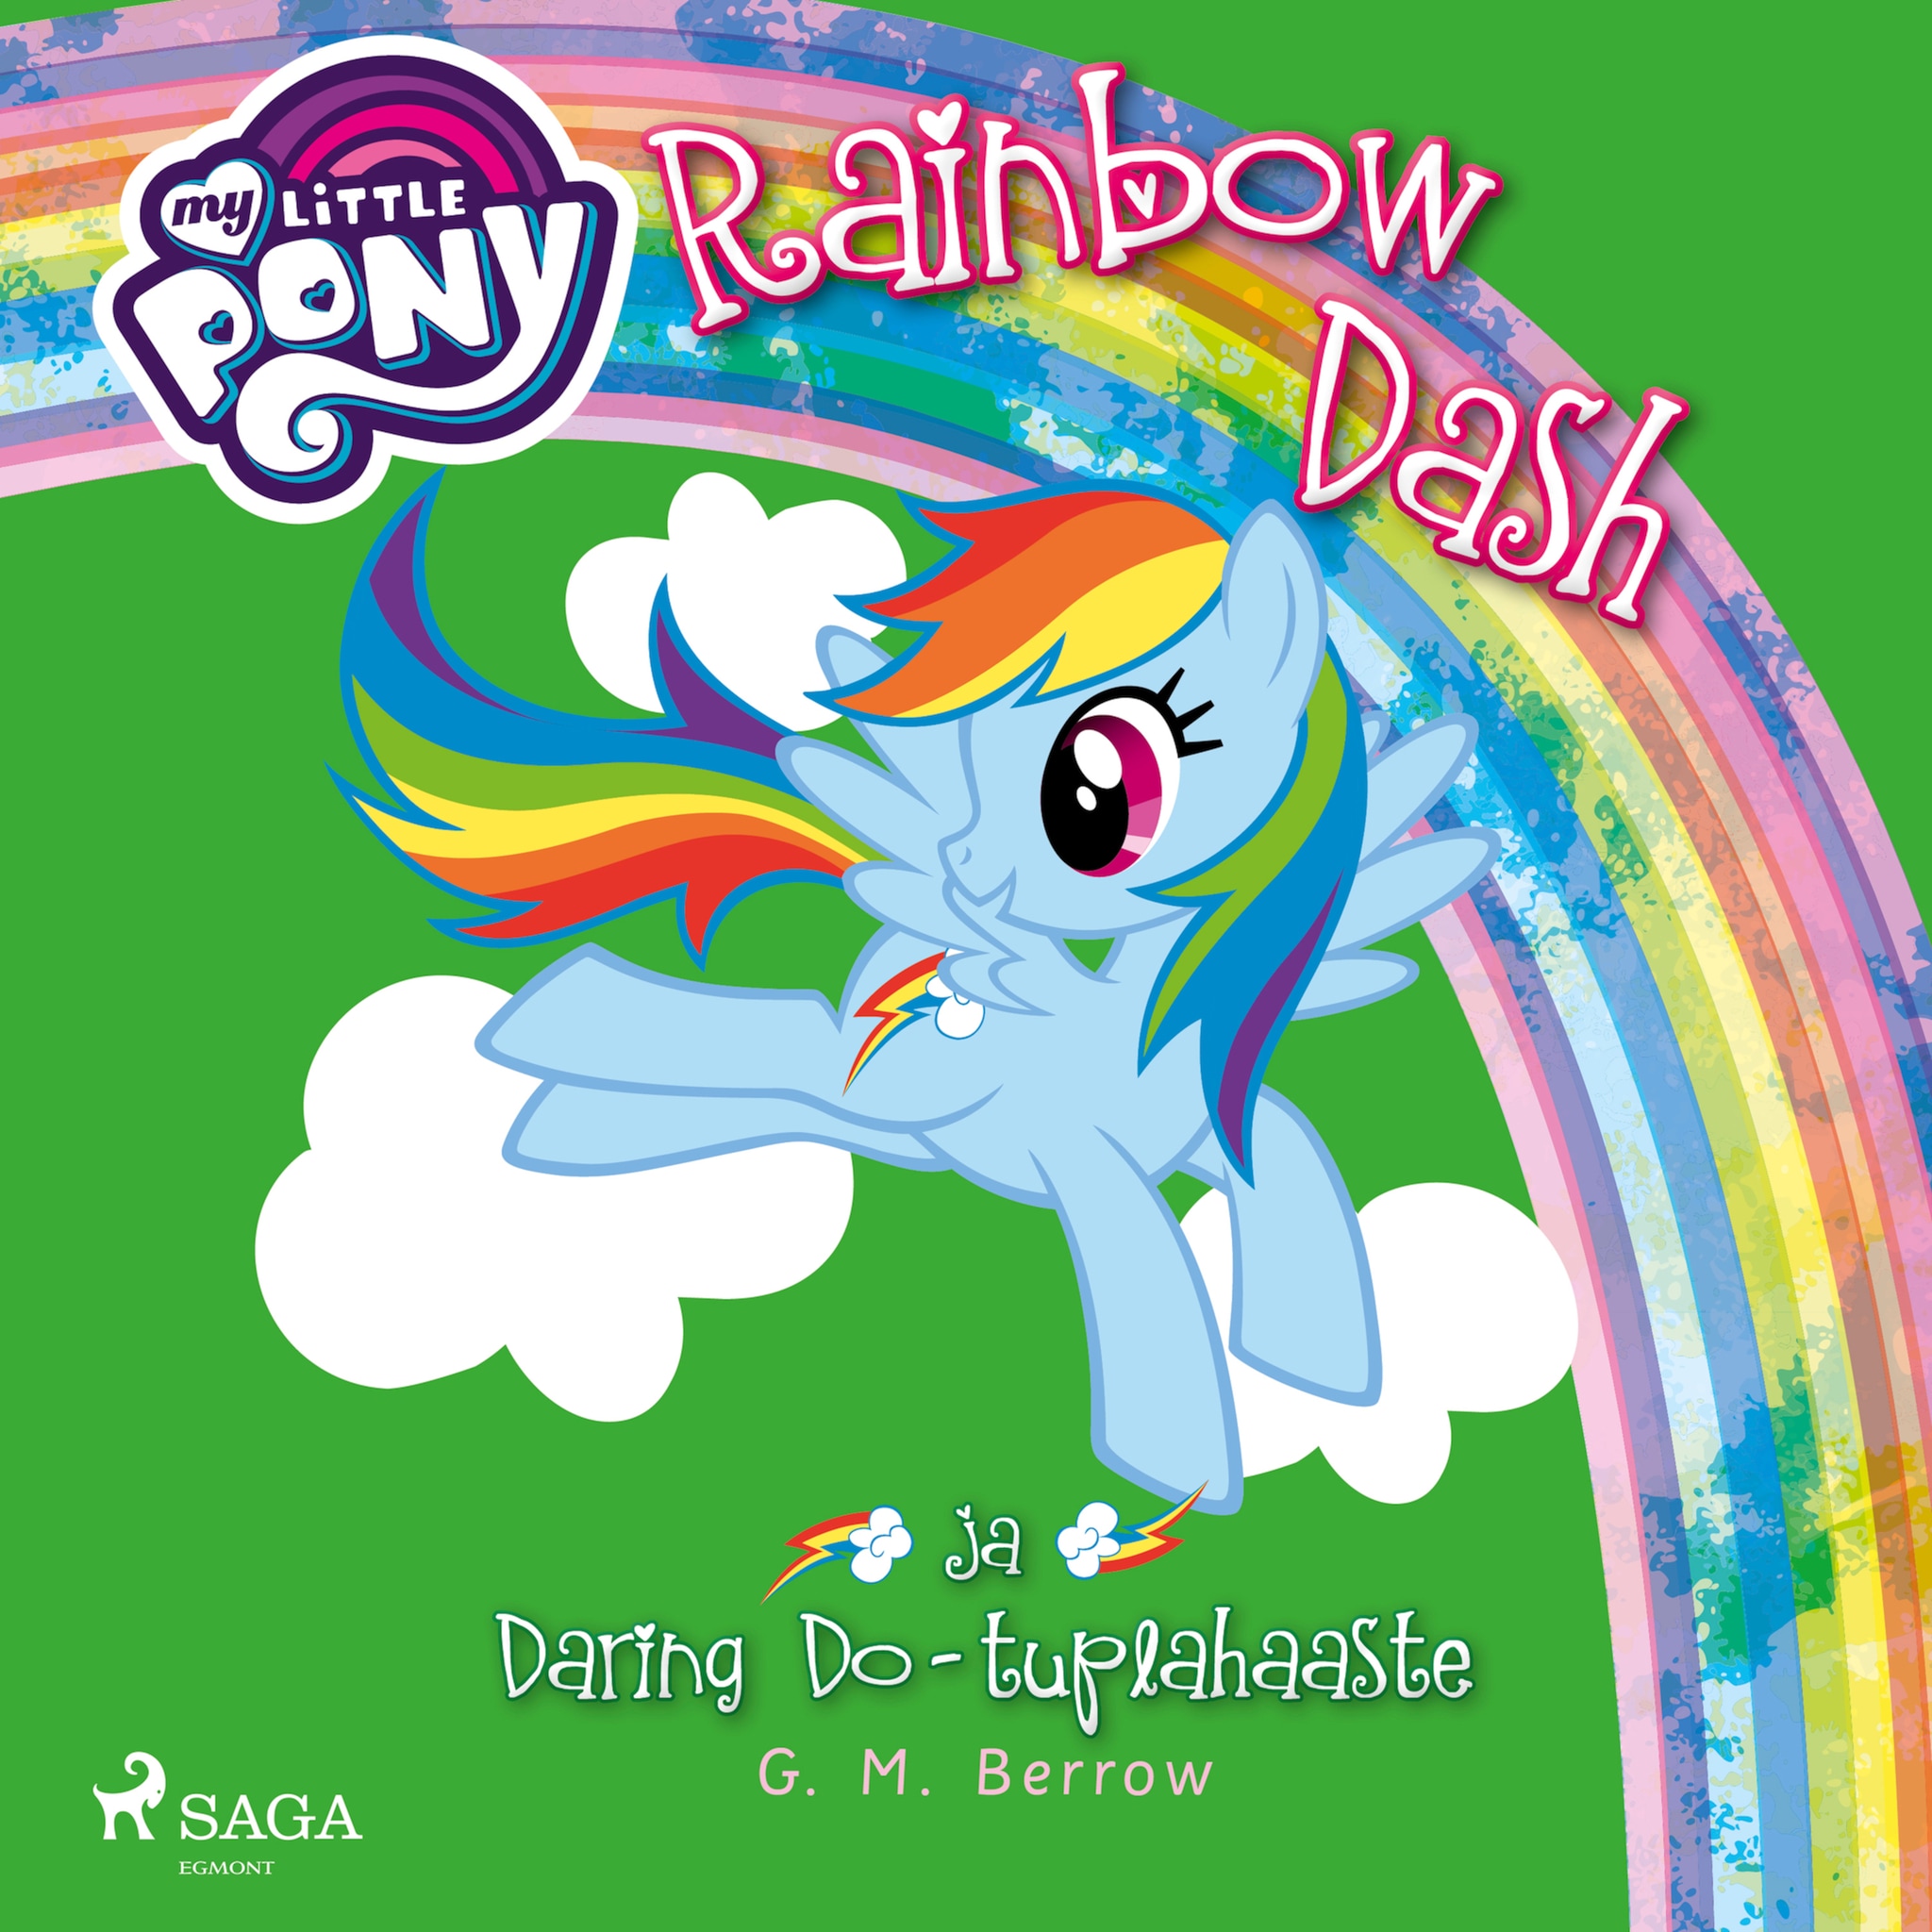 My Little Pony,Rainbow Dash ja Daring Do,tuplahaaste ilmaiseksi